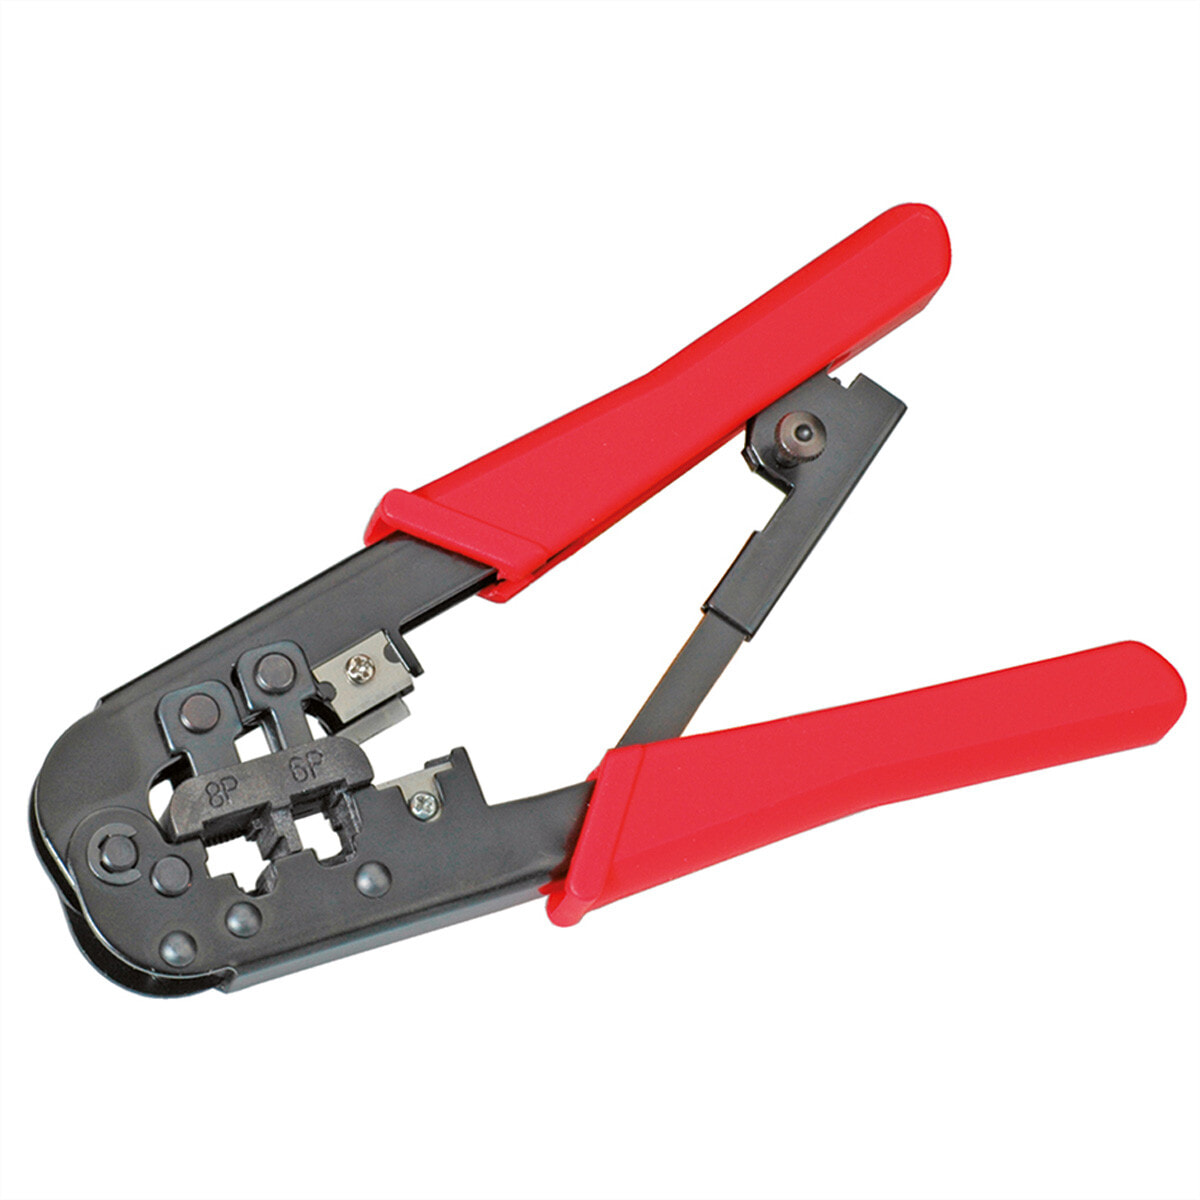 Crimping tool. Обжимной инструмент 6p4c. Knipex обжимка RJ 45. Инструмент для обжима 8p8c/rj45, 6p4c/rj12. Обжимной профессиональный инструмент rj45/8p8c, rj12/6p6c, rj11/6p4c NIKOMAX NMC-500r.